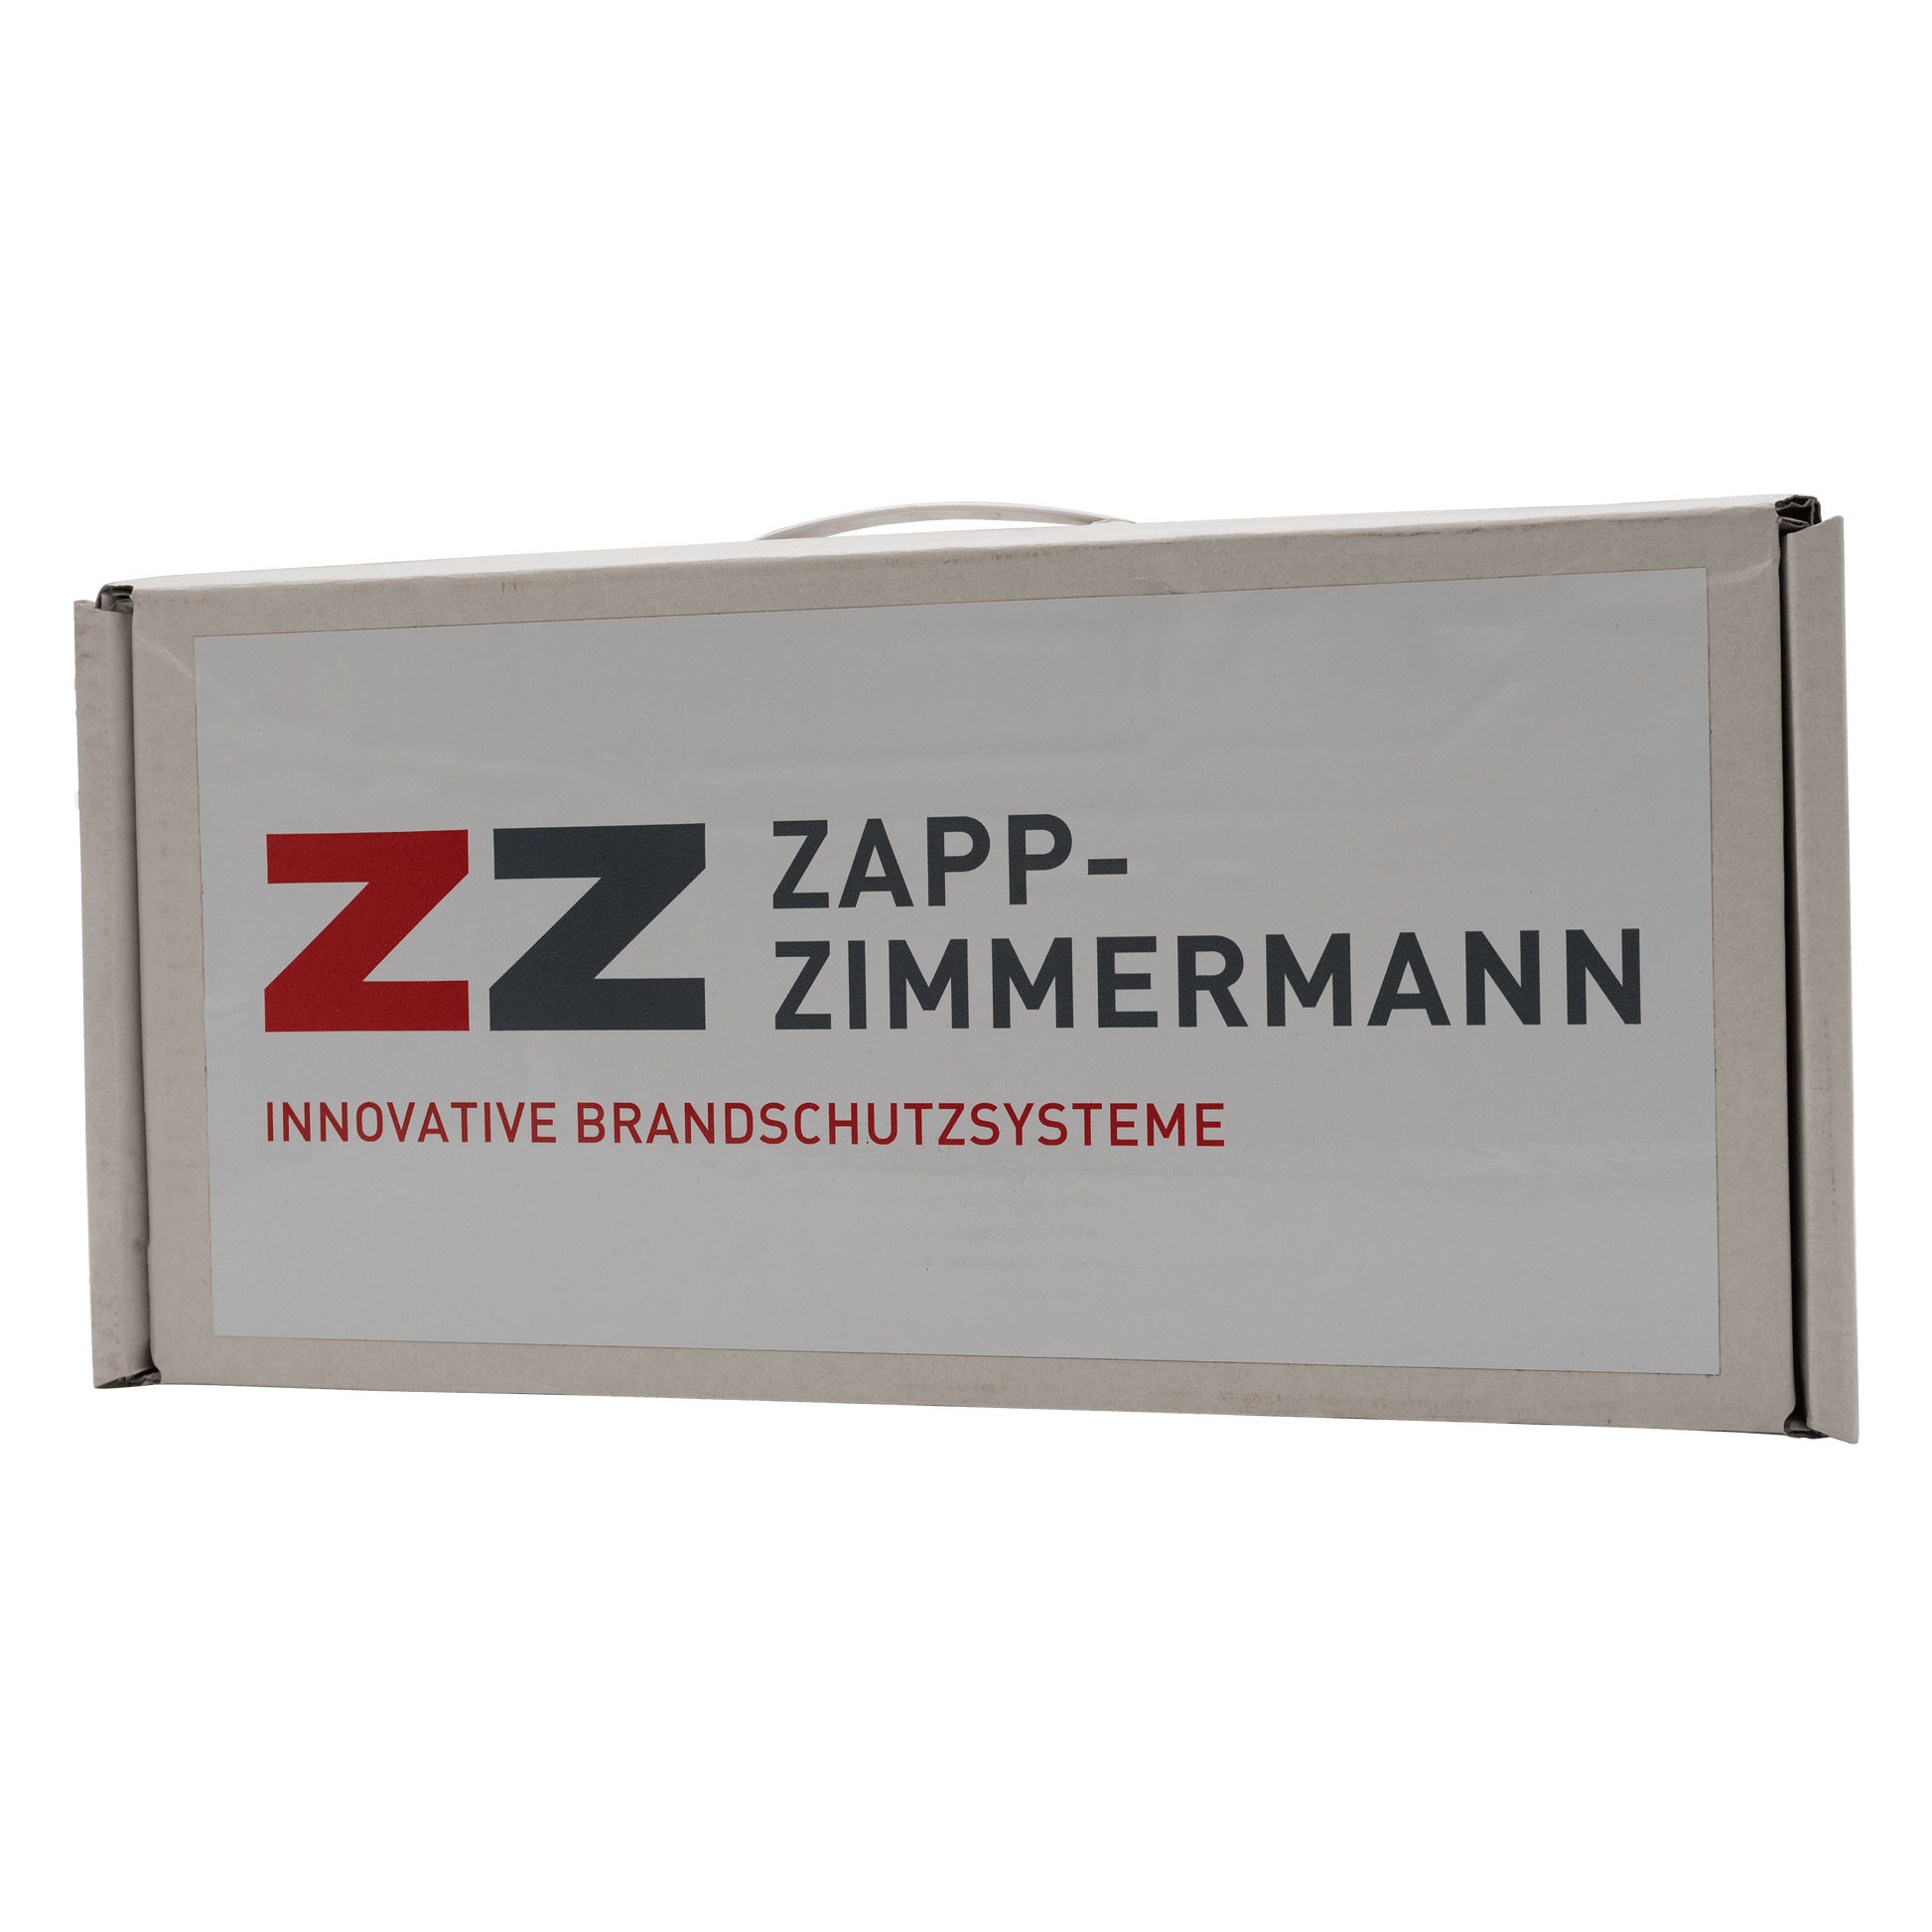 Zapp-Zimmermann-Brandschutzsysteme-box